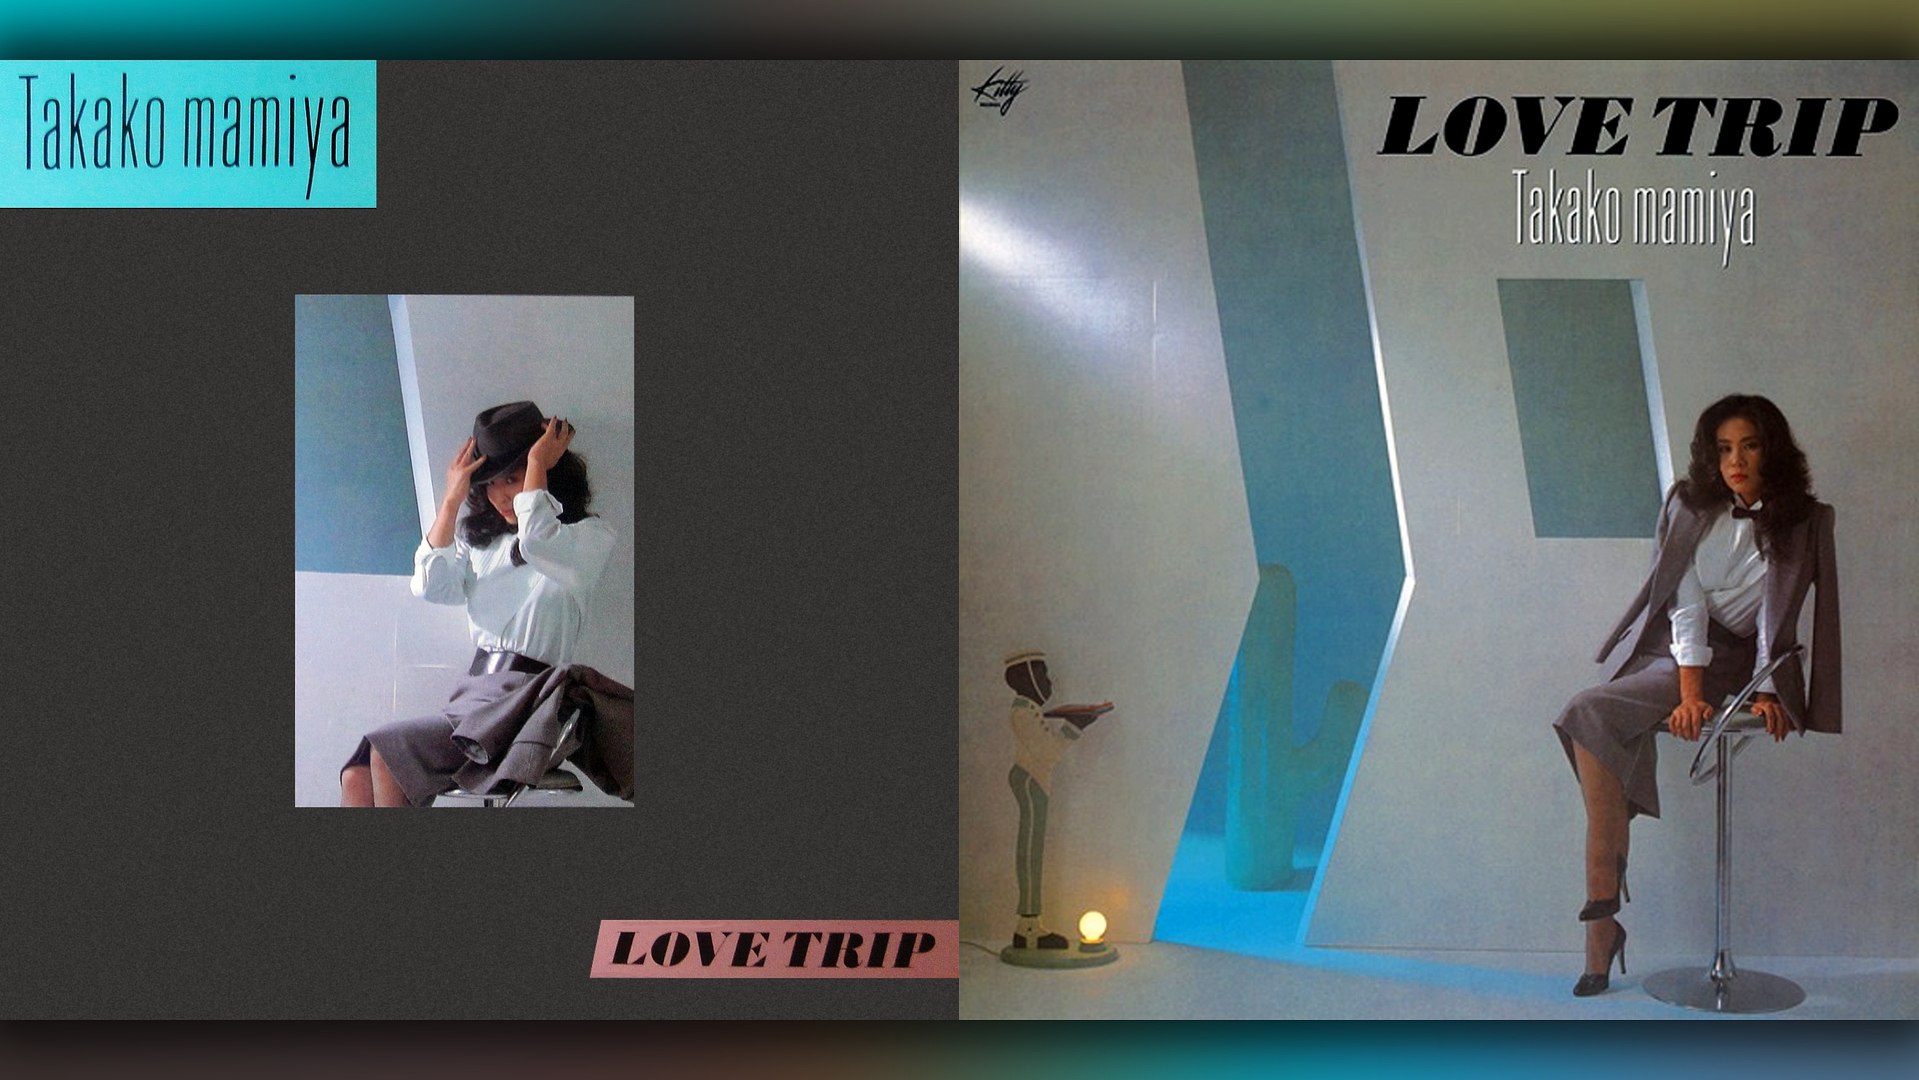 間宮貴子 (Takako Mamiya) - 1982 - Love Trip [full album]